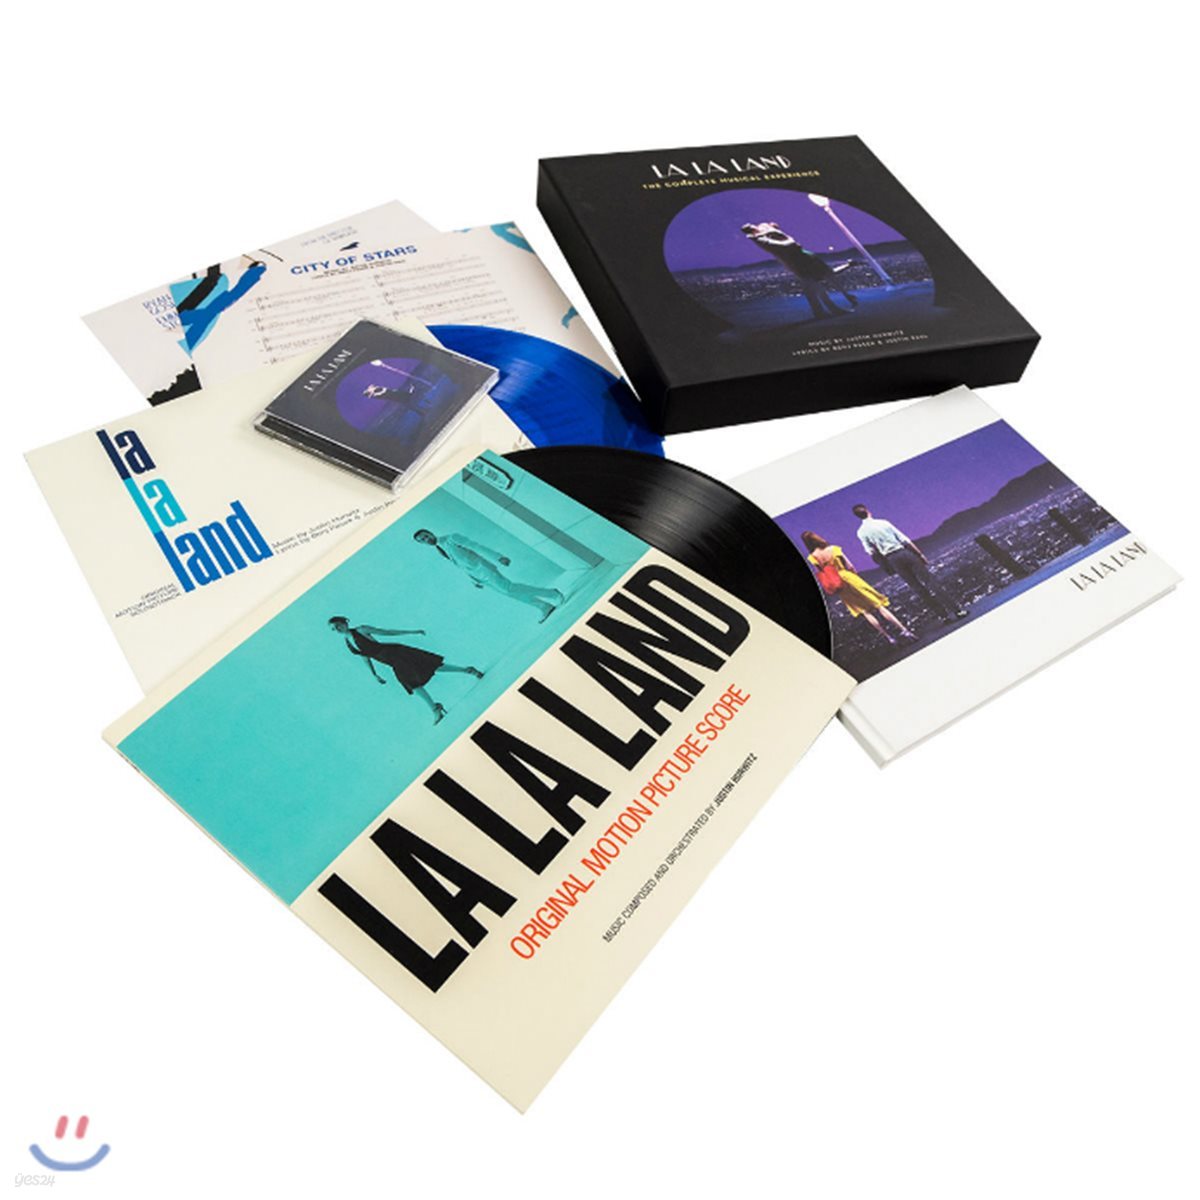 라라랜드 영화음악 합본 컴플리트 박스세트 (La La Land OST - The Complete Musical Experience by Justin Hurwitz 저스틴 허위츠) [3 LP+2 CD]